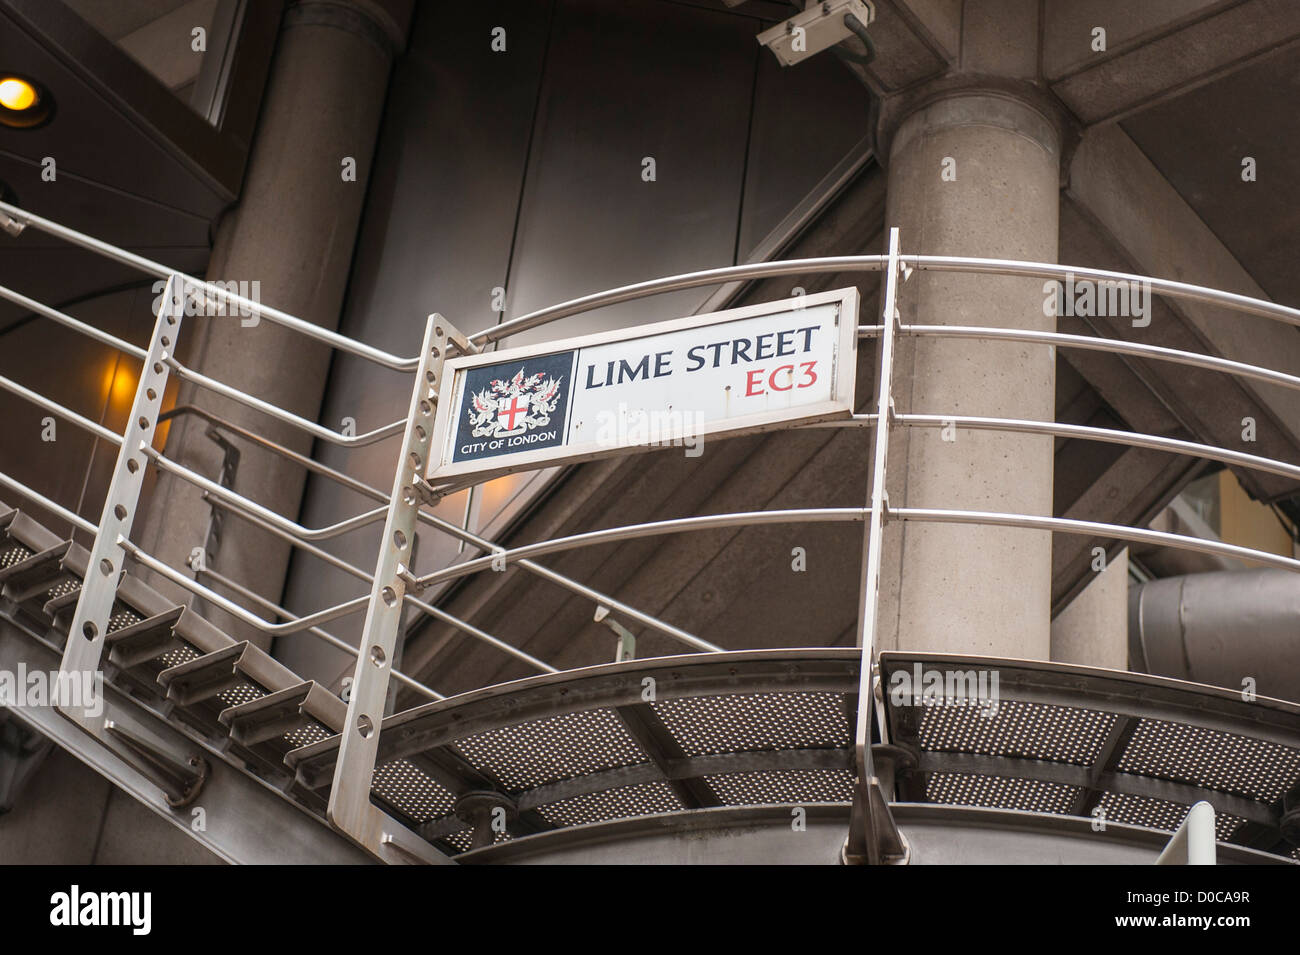 Ville de London EC3 Lime Street road sign on établissement emblématique de détails le bâtiment de la Lloyds aux escaliers de secours escalier garde-corps caméra de surveillance Banque D'Images